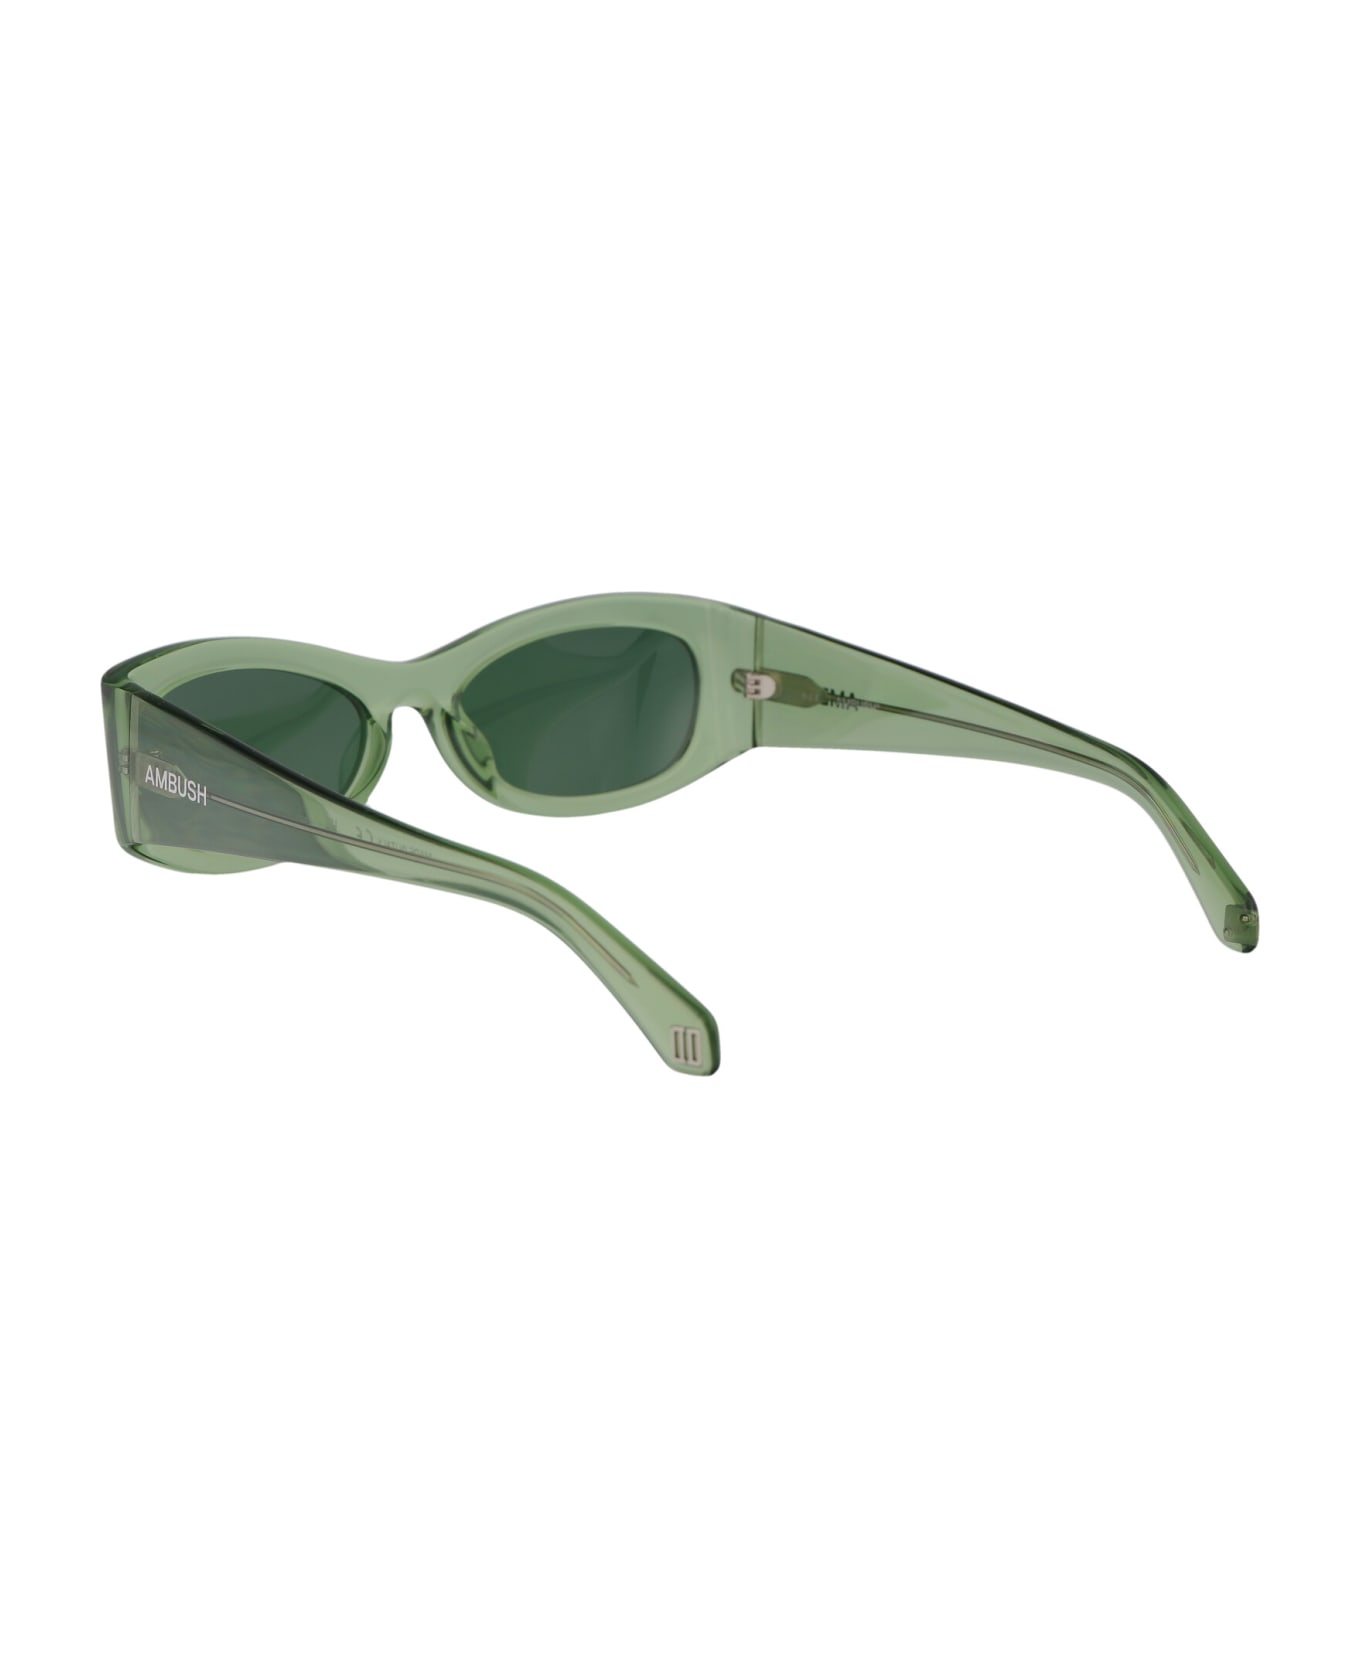 AMBUSH Bernie Sunglasses - 7055 GREEN